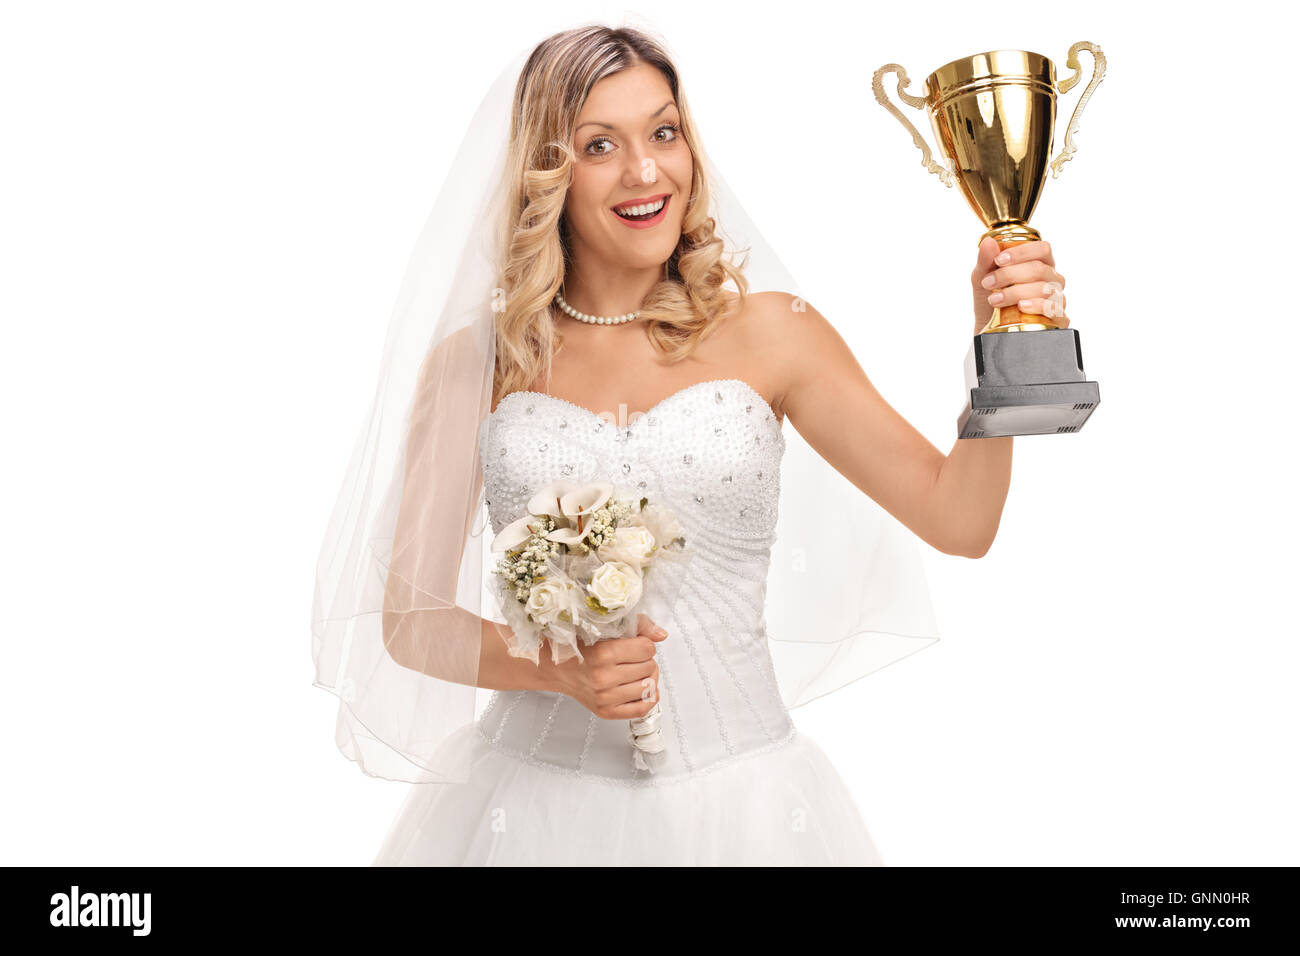 Cheerful bride holding a bouquet de fleurs et un trophée isolé sur fond blanc Banque D'Images